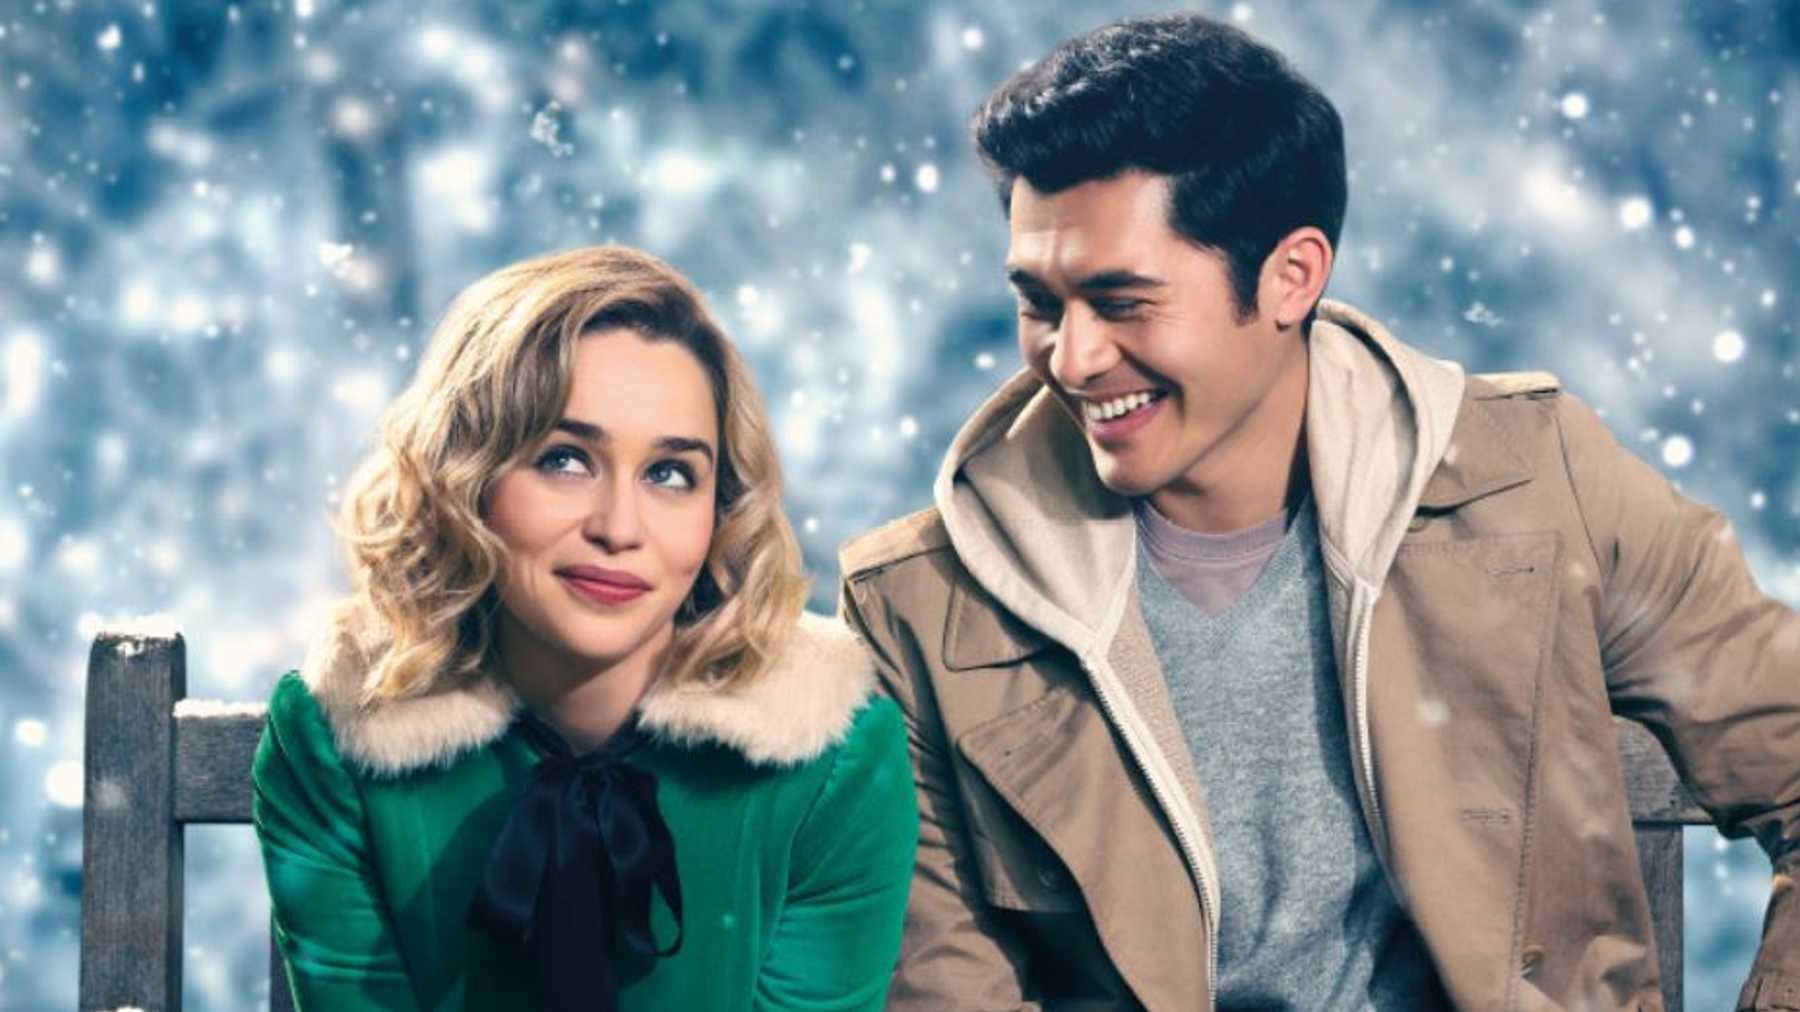 Filmen  ”Last Christmas” från 2019 med Emilia Clarke och Henry Golding.